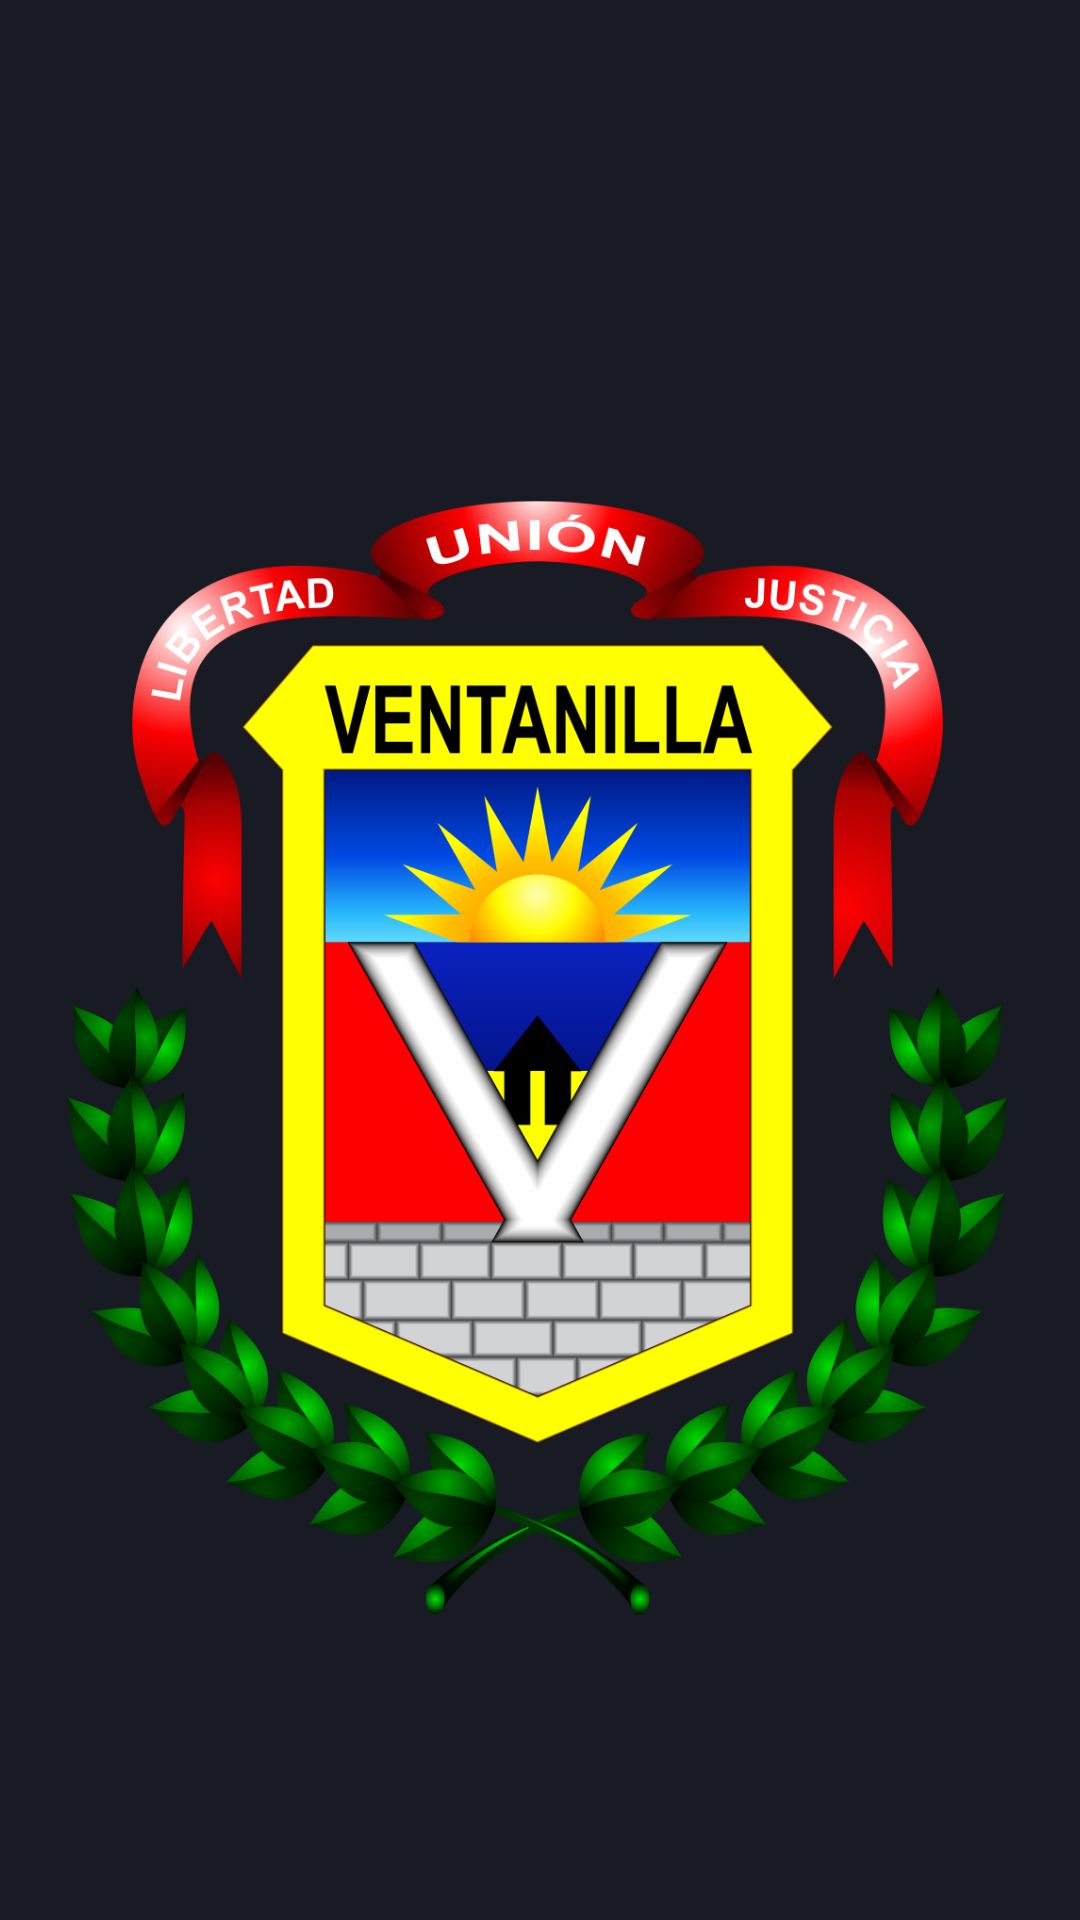 Licencia municipal Ventanilla